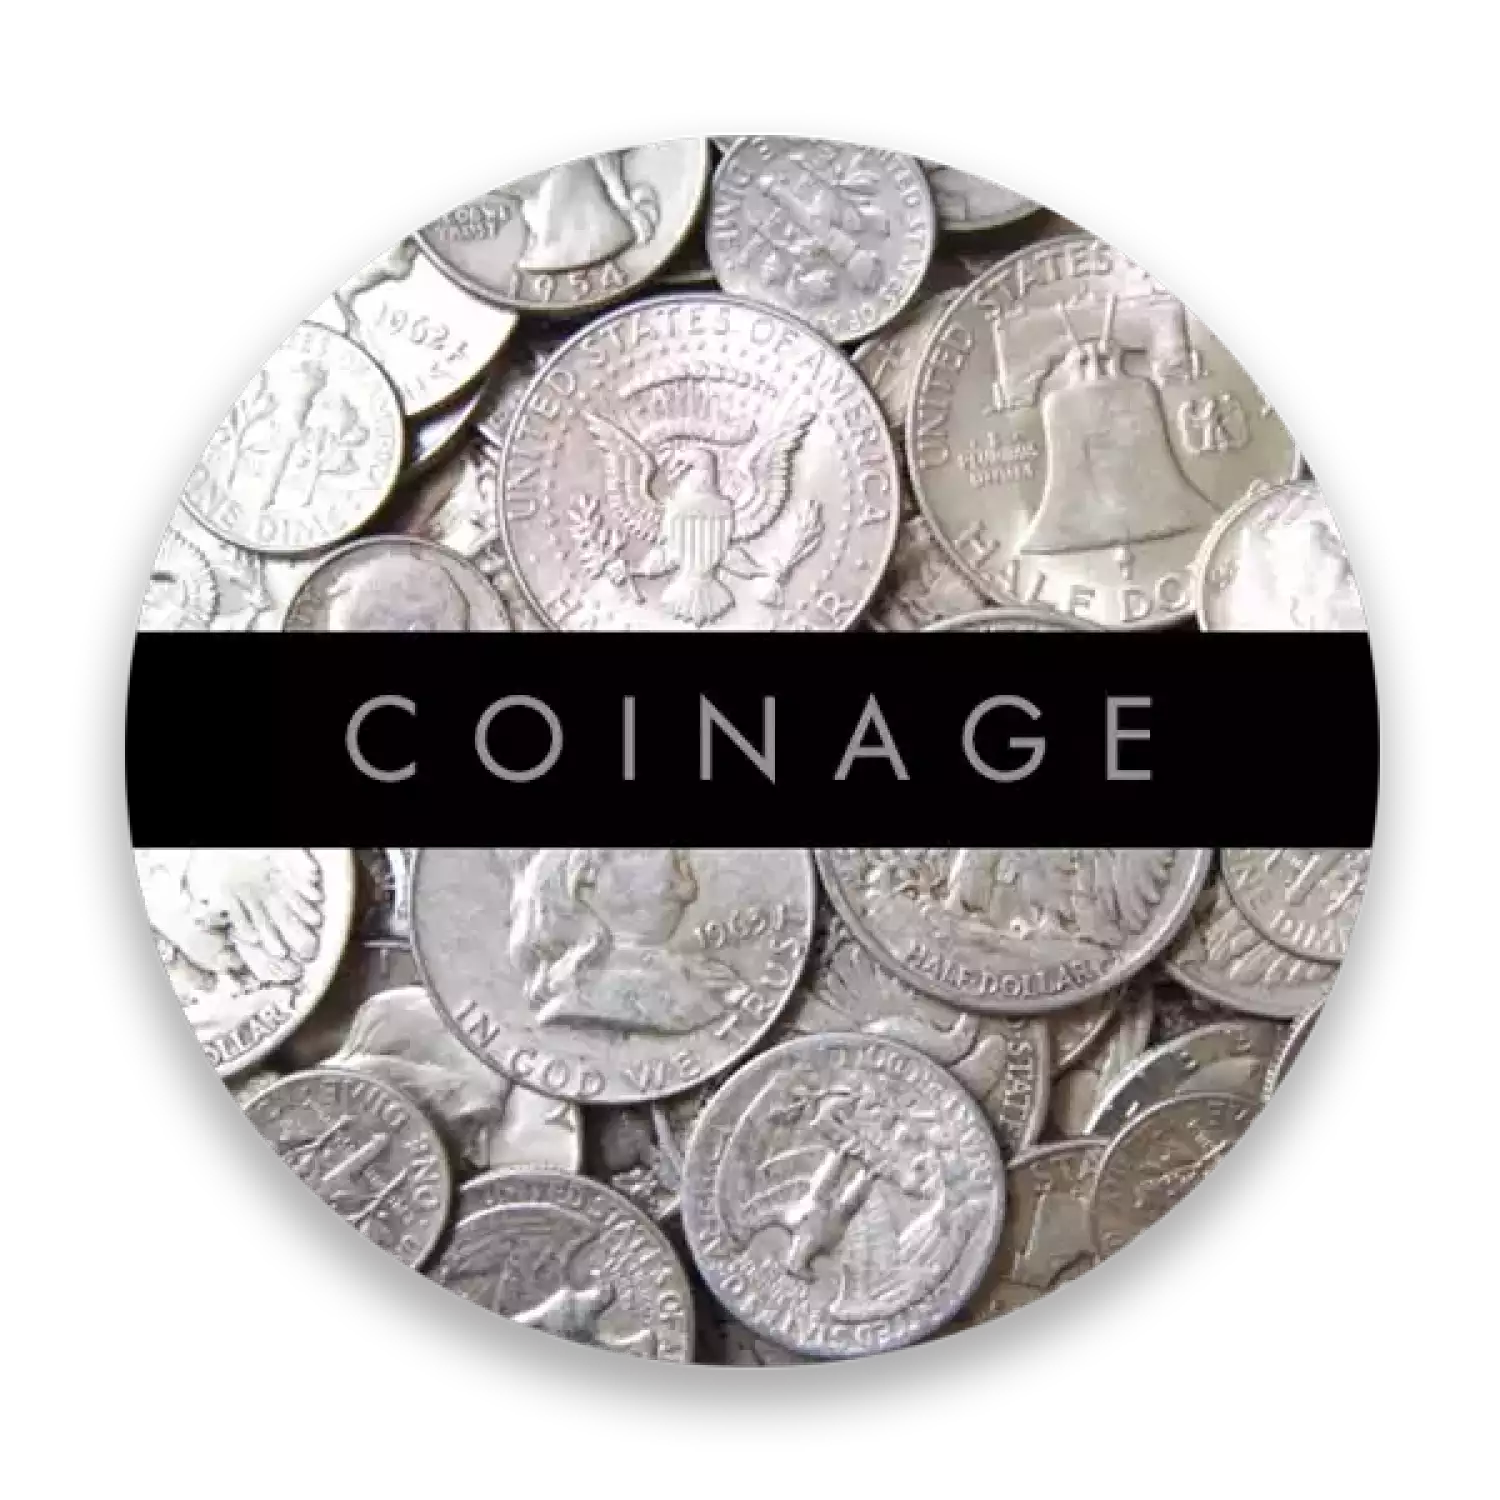 US 90% Silver Coinage - Pre 1965 - Junk Silver 50¢